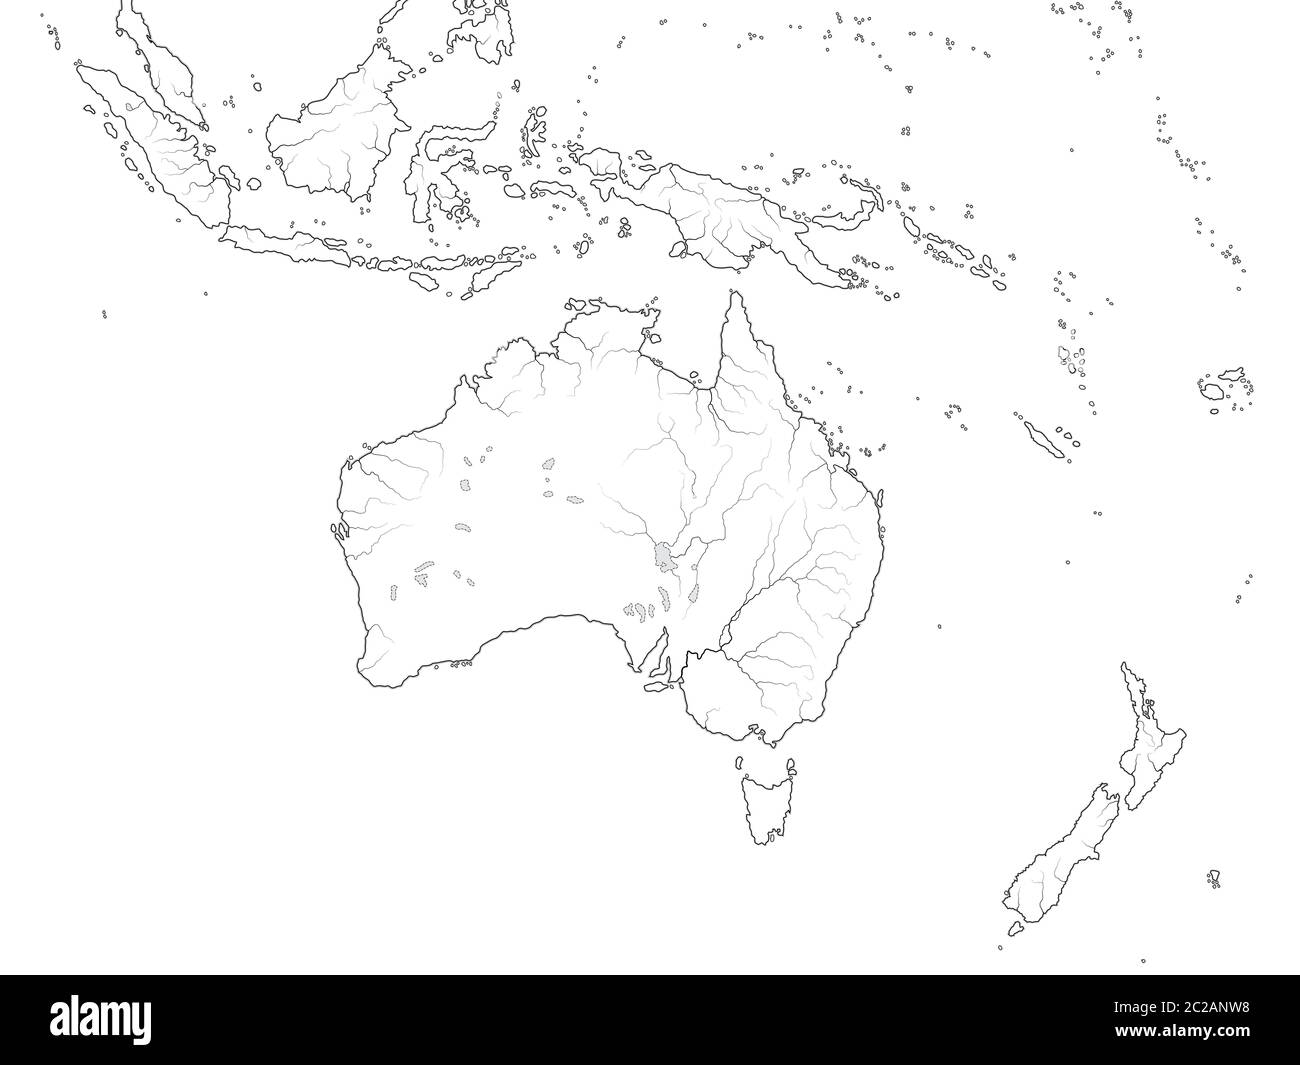 Carte du monde de L'AUSTRALASIE : Australie, Océanie, Indonésie, Polynésie, Océan Pacifique. Carte géographique. Banque D'Images